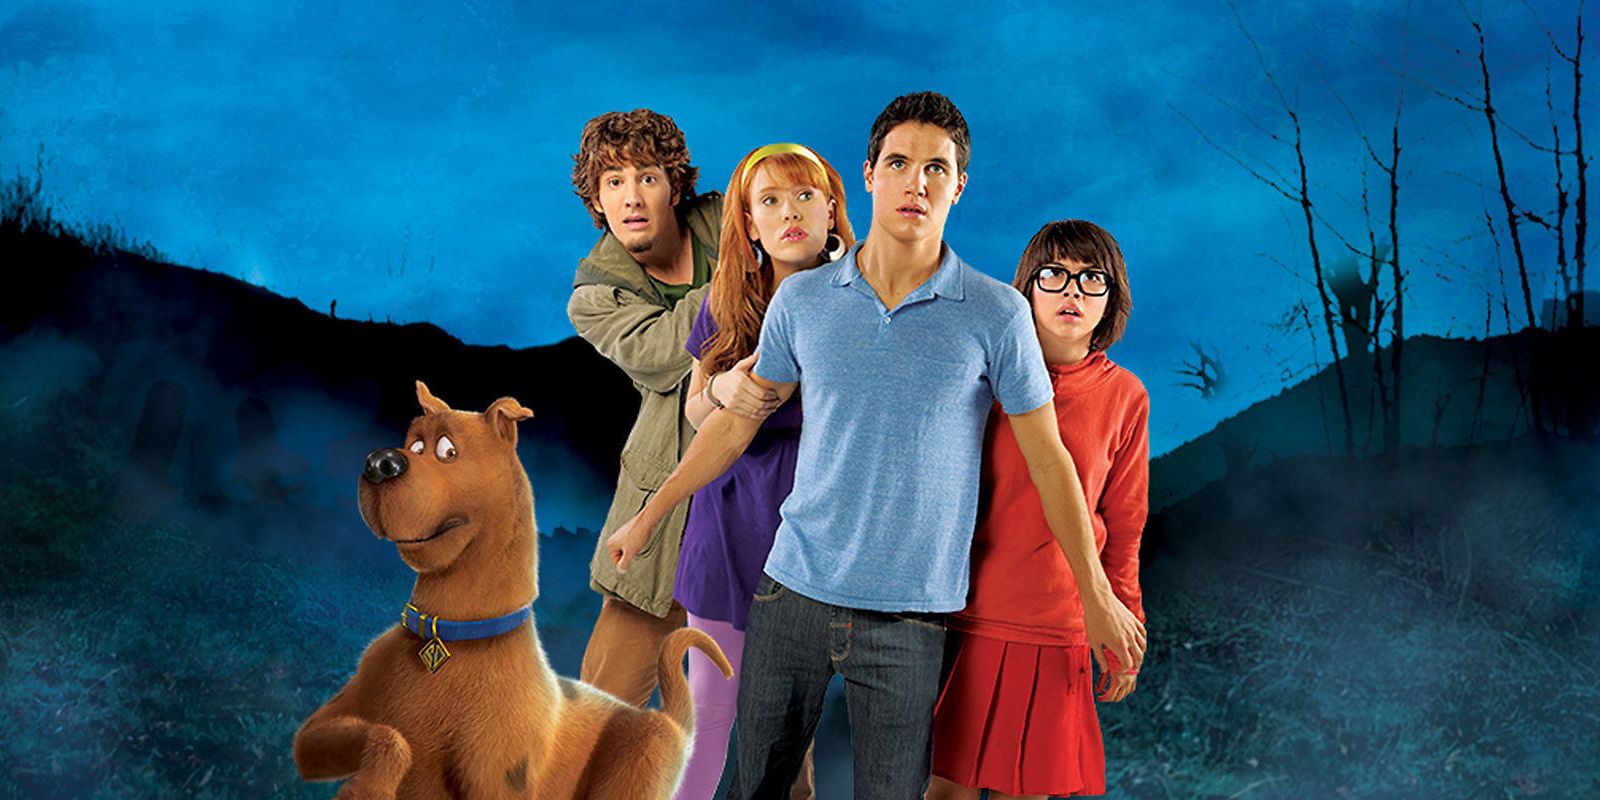 Scooby doo movie - lopezaim